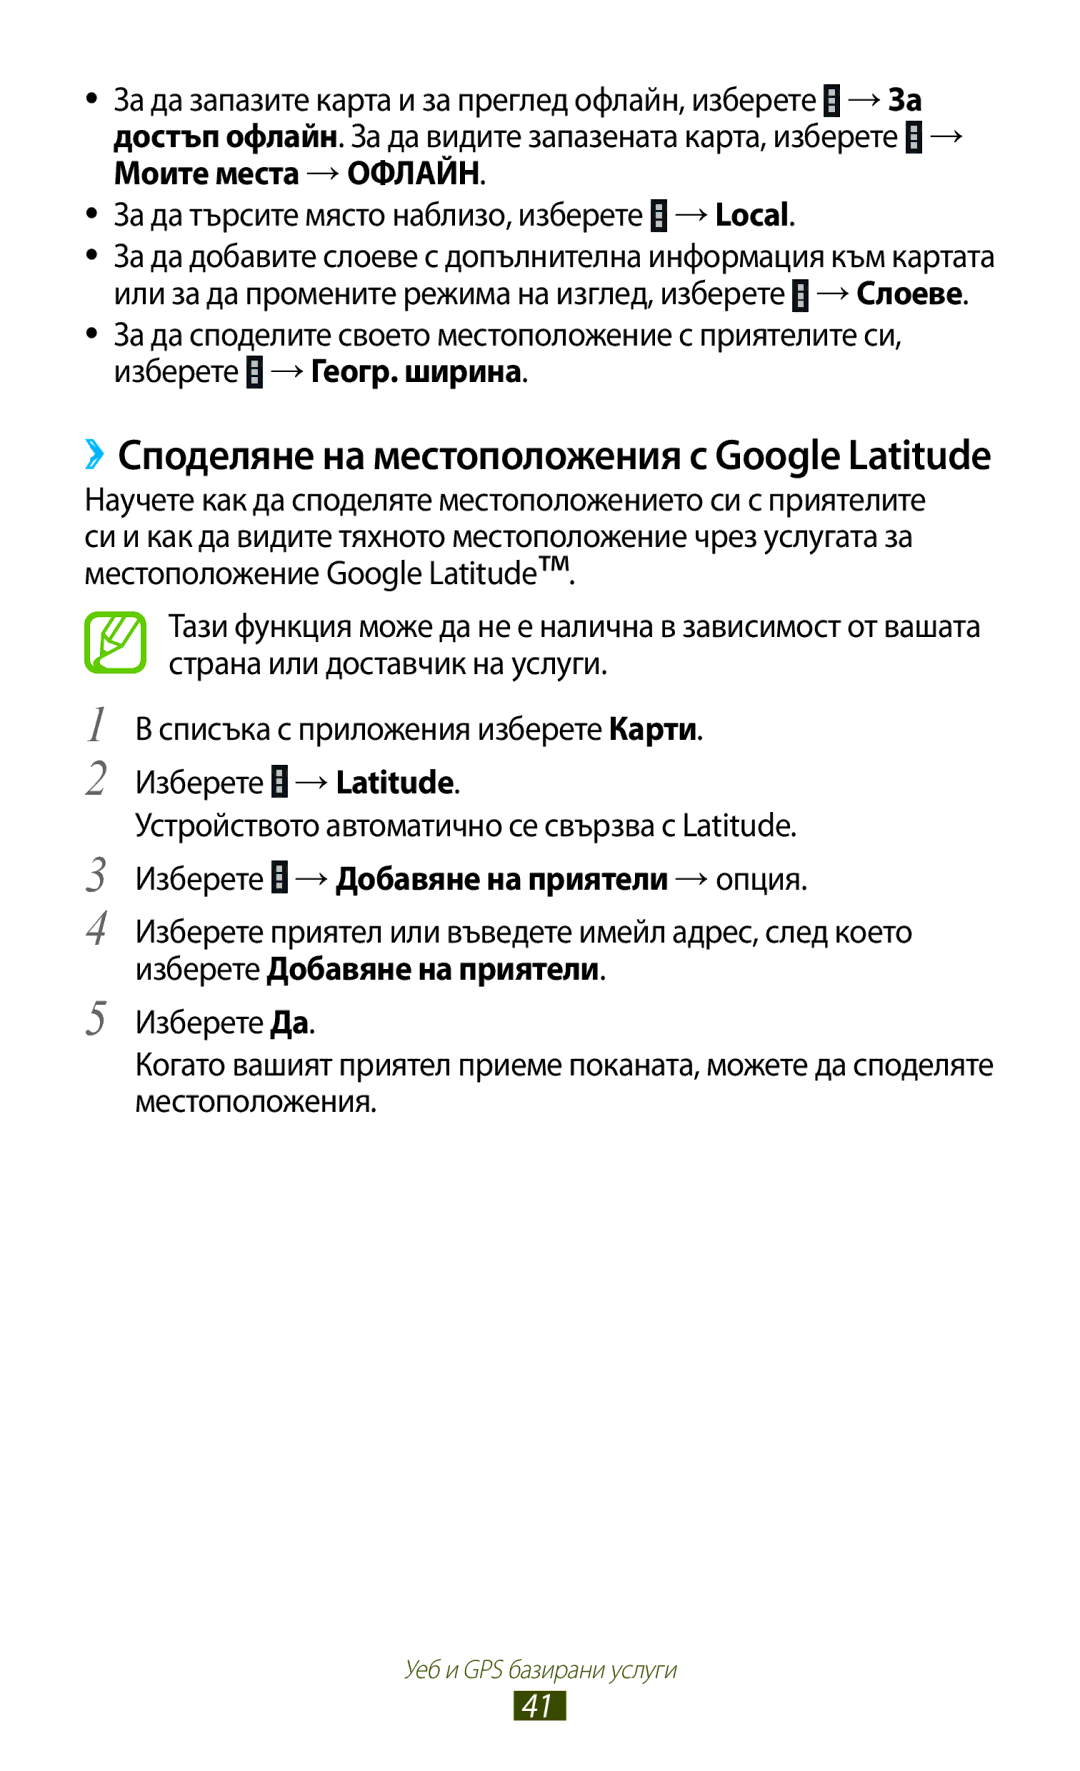 Samsung GT-P3110TSEBGL manual ››Споделяне на местоположения с Google Latitude, Изберете →Добавяне на приятели →опция 